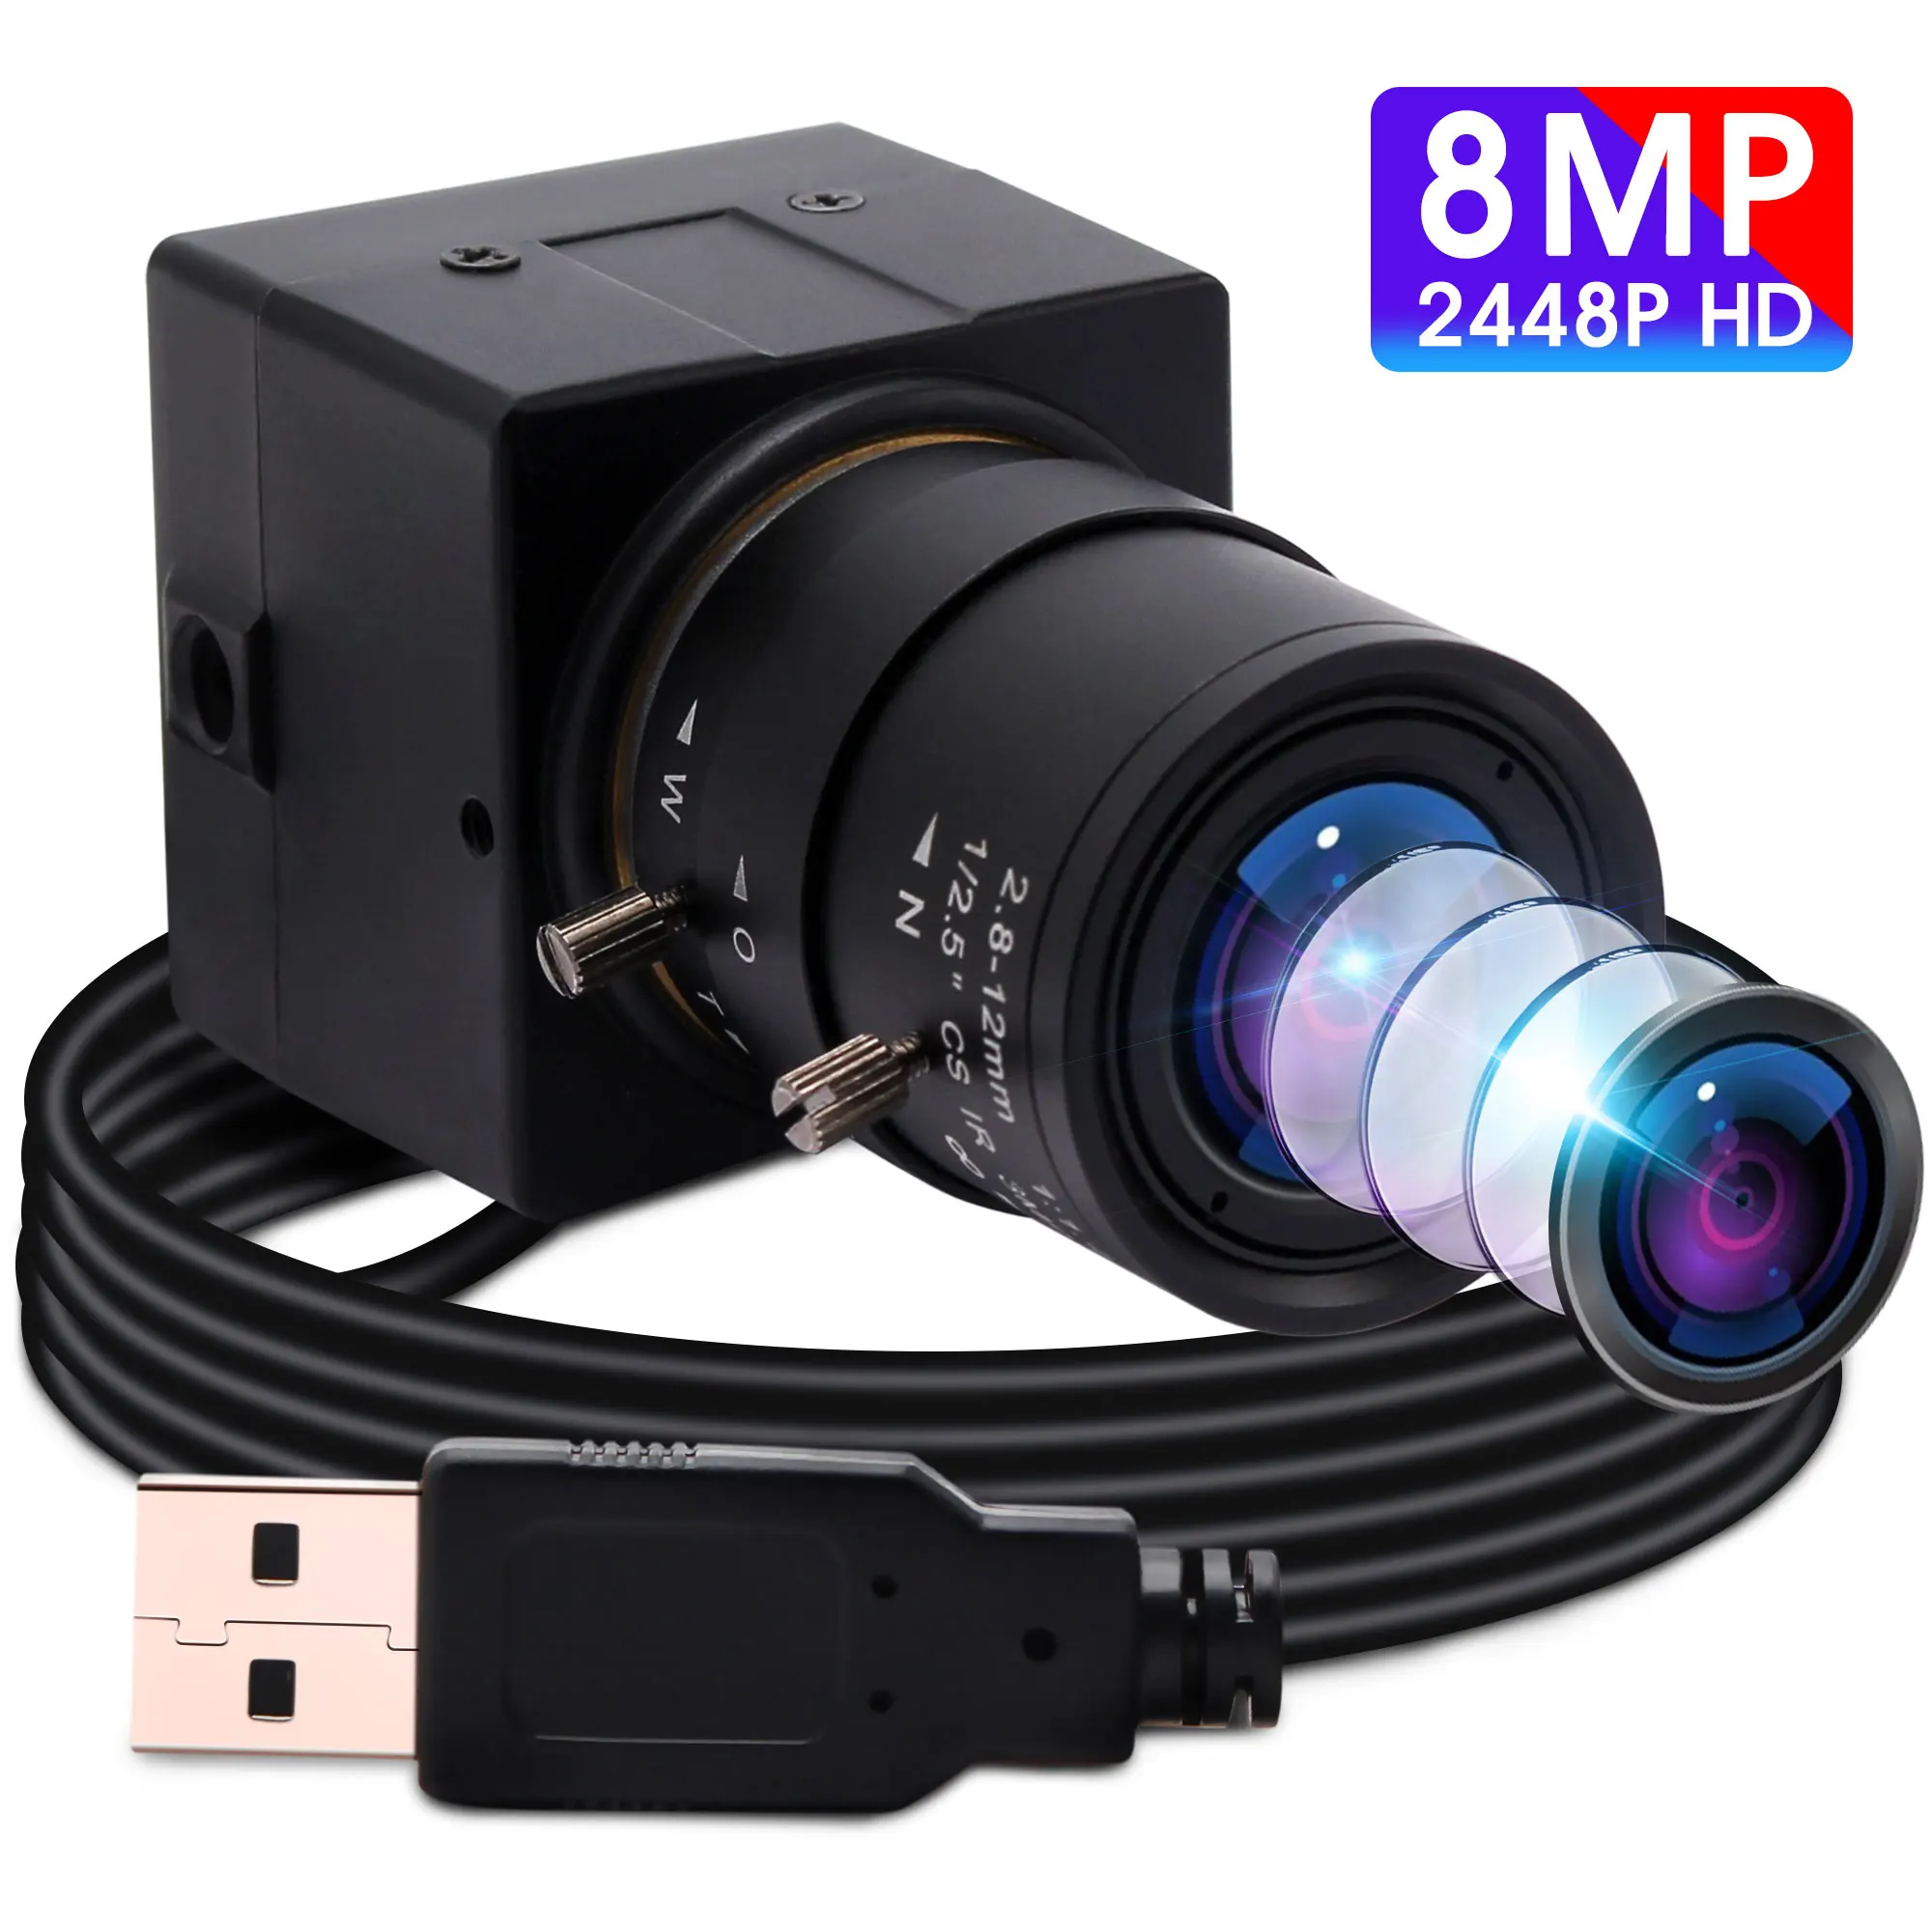 8MP USB Веб-Камера CCTV CS Крепление Варифокальный Объектив 8 Мегапикселей Высокой Четкости Mini HD Видеокамера Безопасности USB для ПК Компьютер Ноутбук